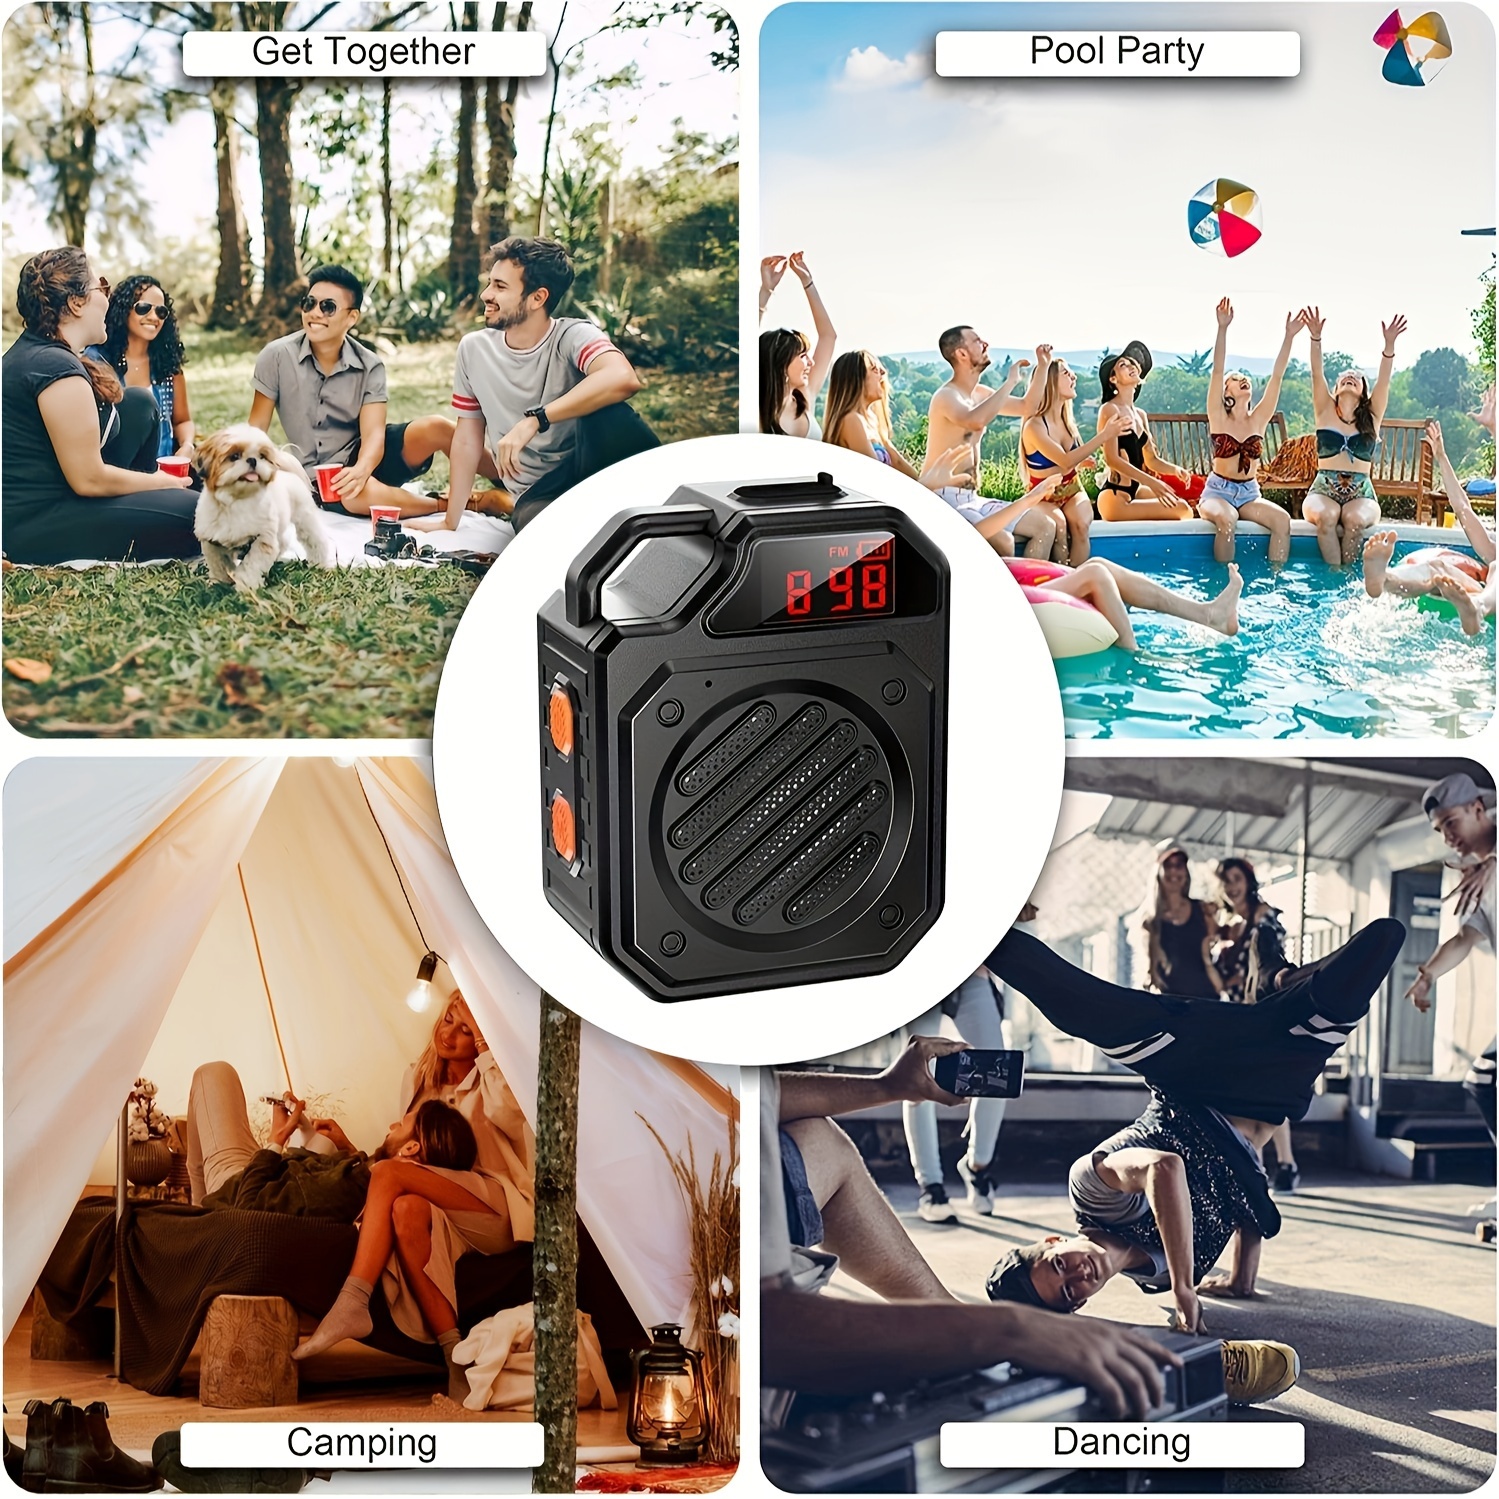  Altavoz de ducha actualizado, IPX7 impermeable altavoces  Bluetooth portátiles con emparejamiento estéreo, inalámbrico para  bicicleta, kayak, piscina, playa, al aire libre : Electrónica